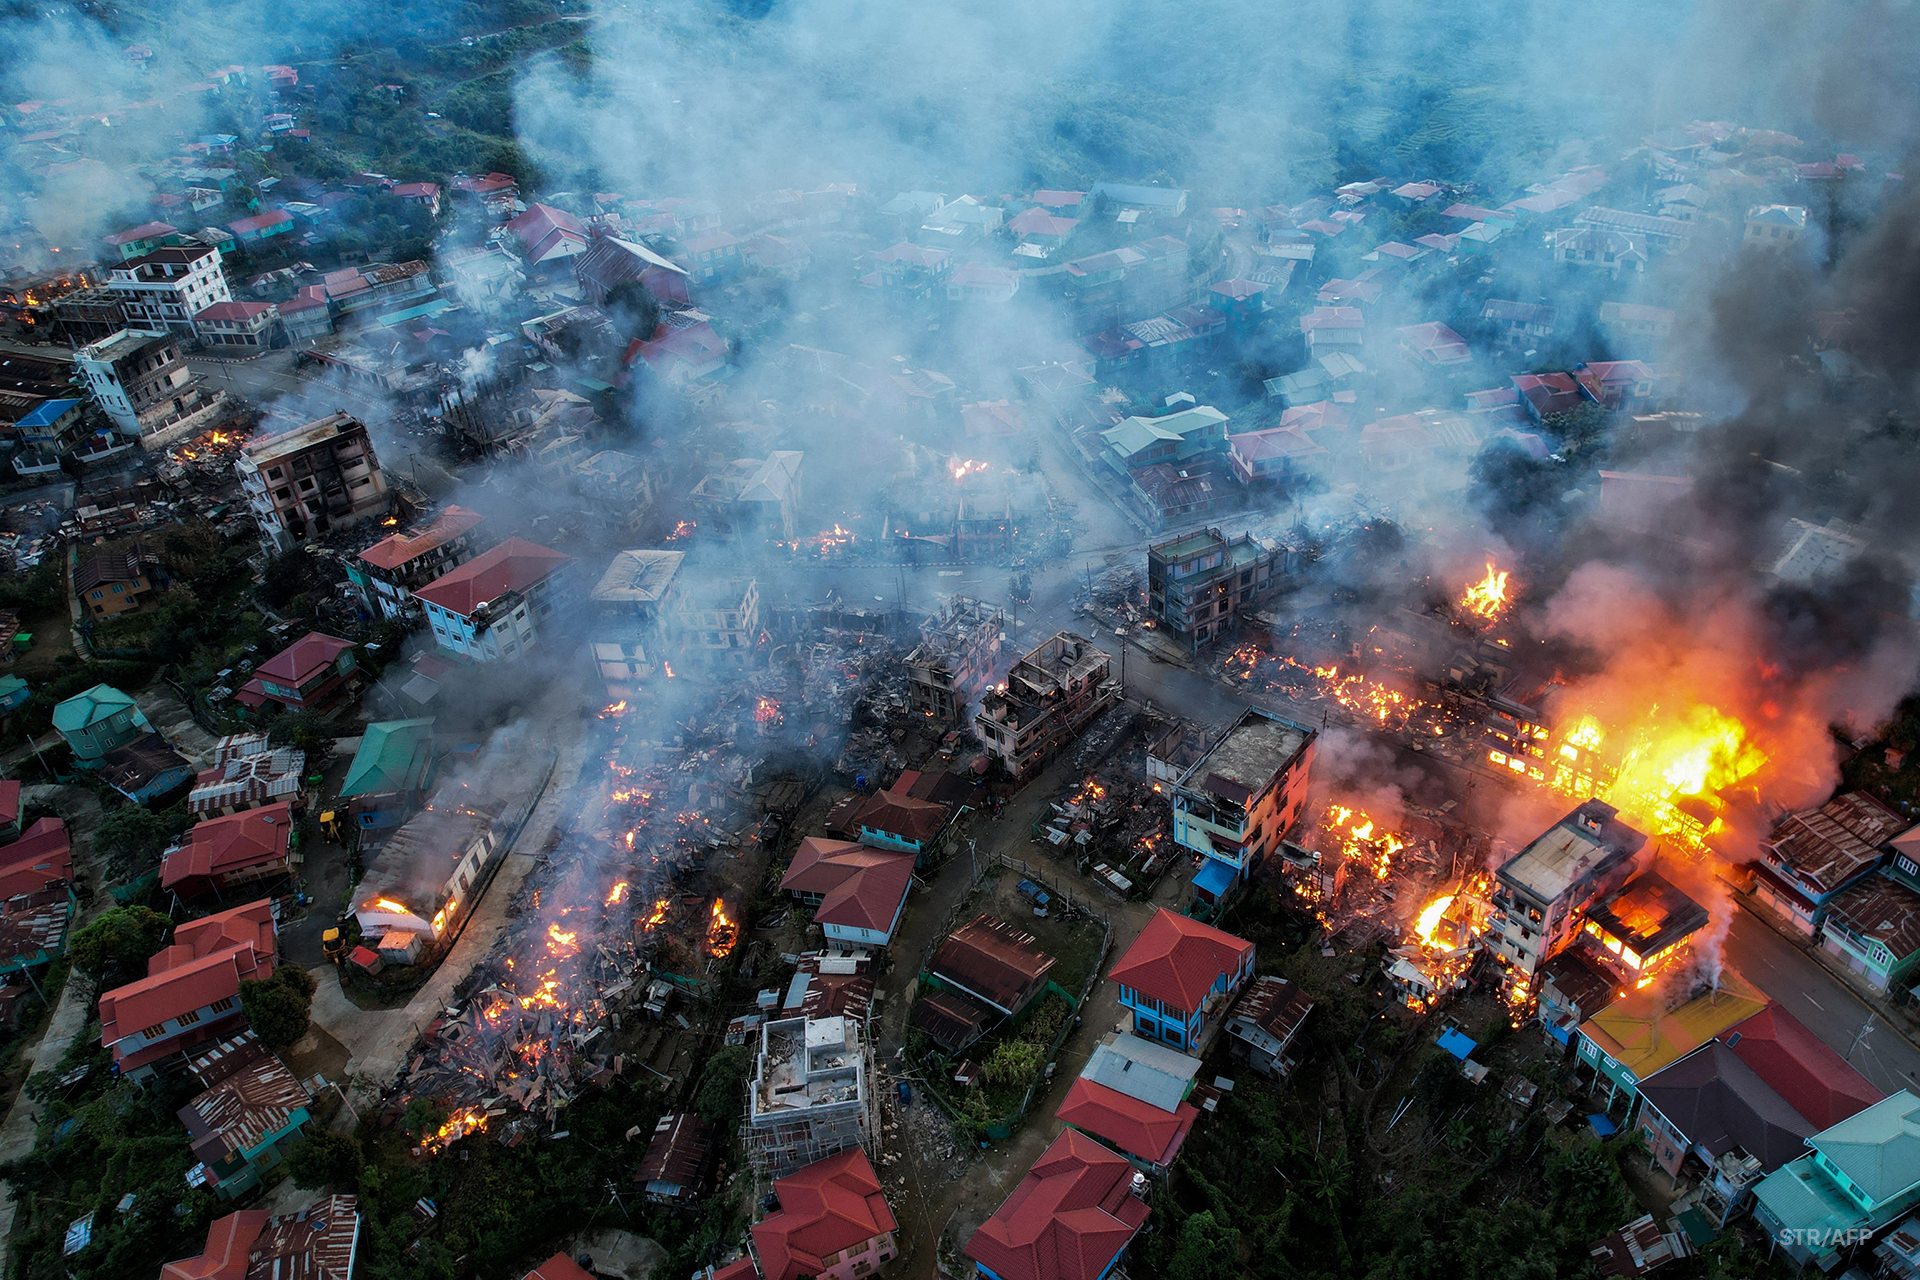 အာဏာသိမ်းမှုနောက်ပိုင်း နိုင်ငံတဝန်း နေအိမ်၊ အဆောက်အအုံ ၃၆,၀၀၀ ကျော် မီးရှို့ဖျက်ဆီးခြင်းခံခဲ့ရ